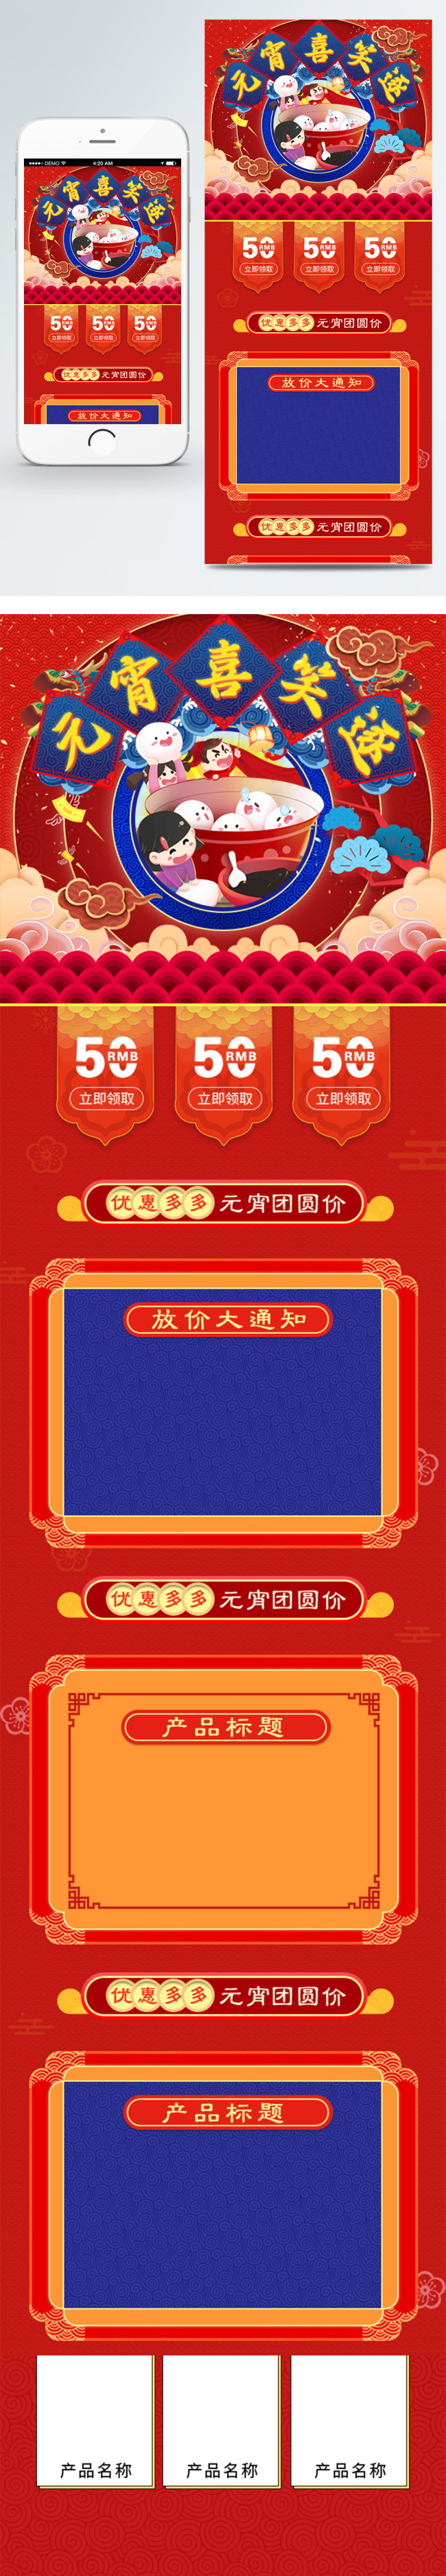 红色中国风喜庆元宵节淘宝电商移动端首页图片